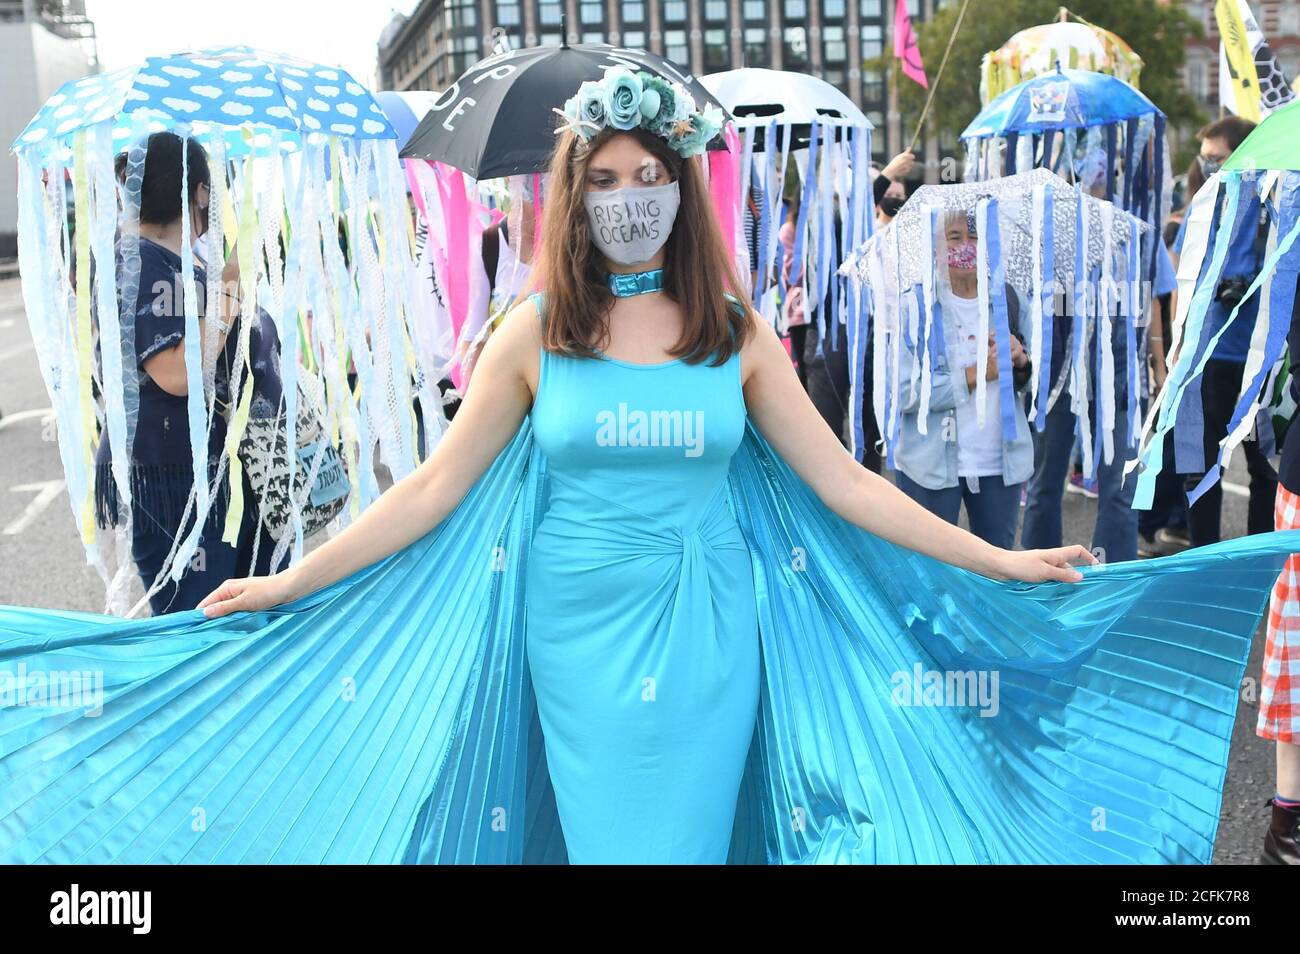 Los manifestantes participan durante una marcha de extinción marina, parte de una protesta por la rebelión de extinción en Westminster, en el centro de Londres. Foto de stock